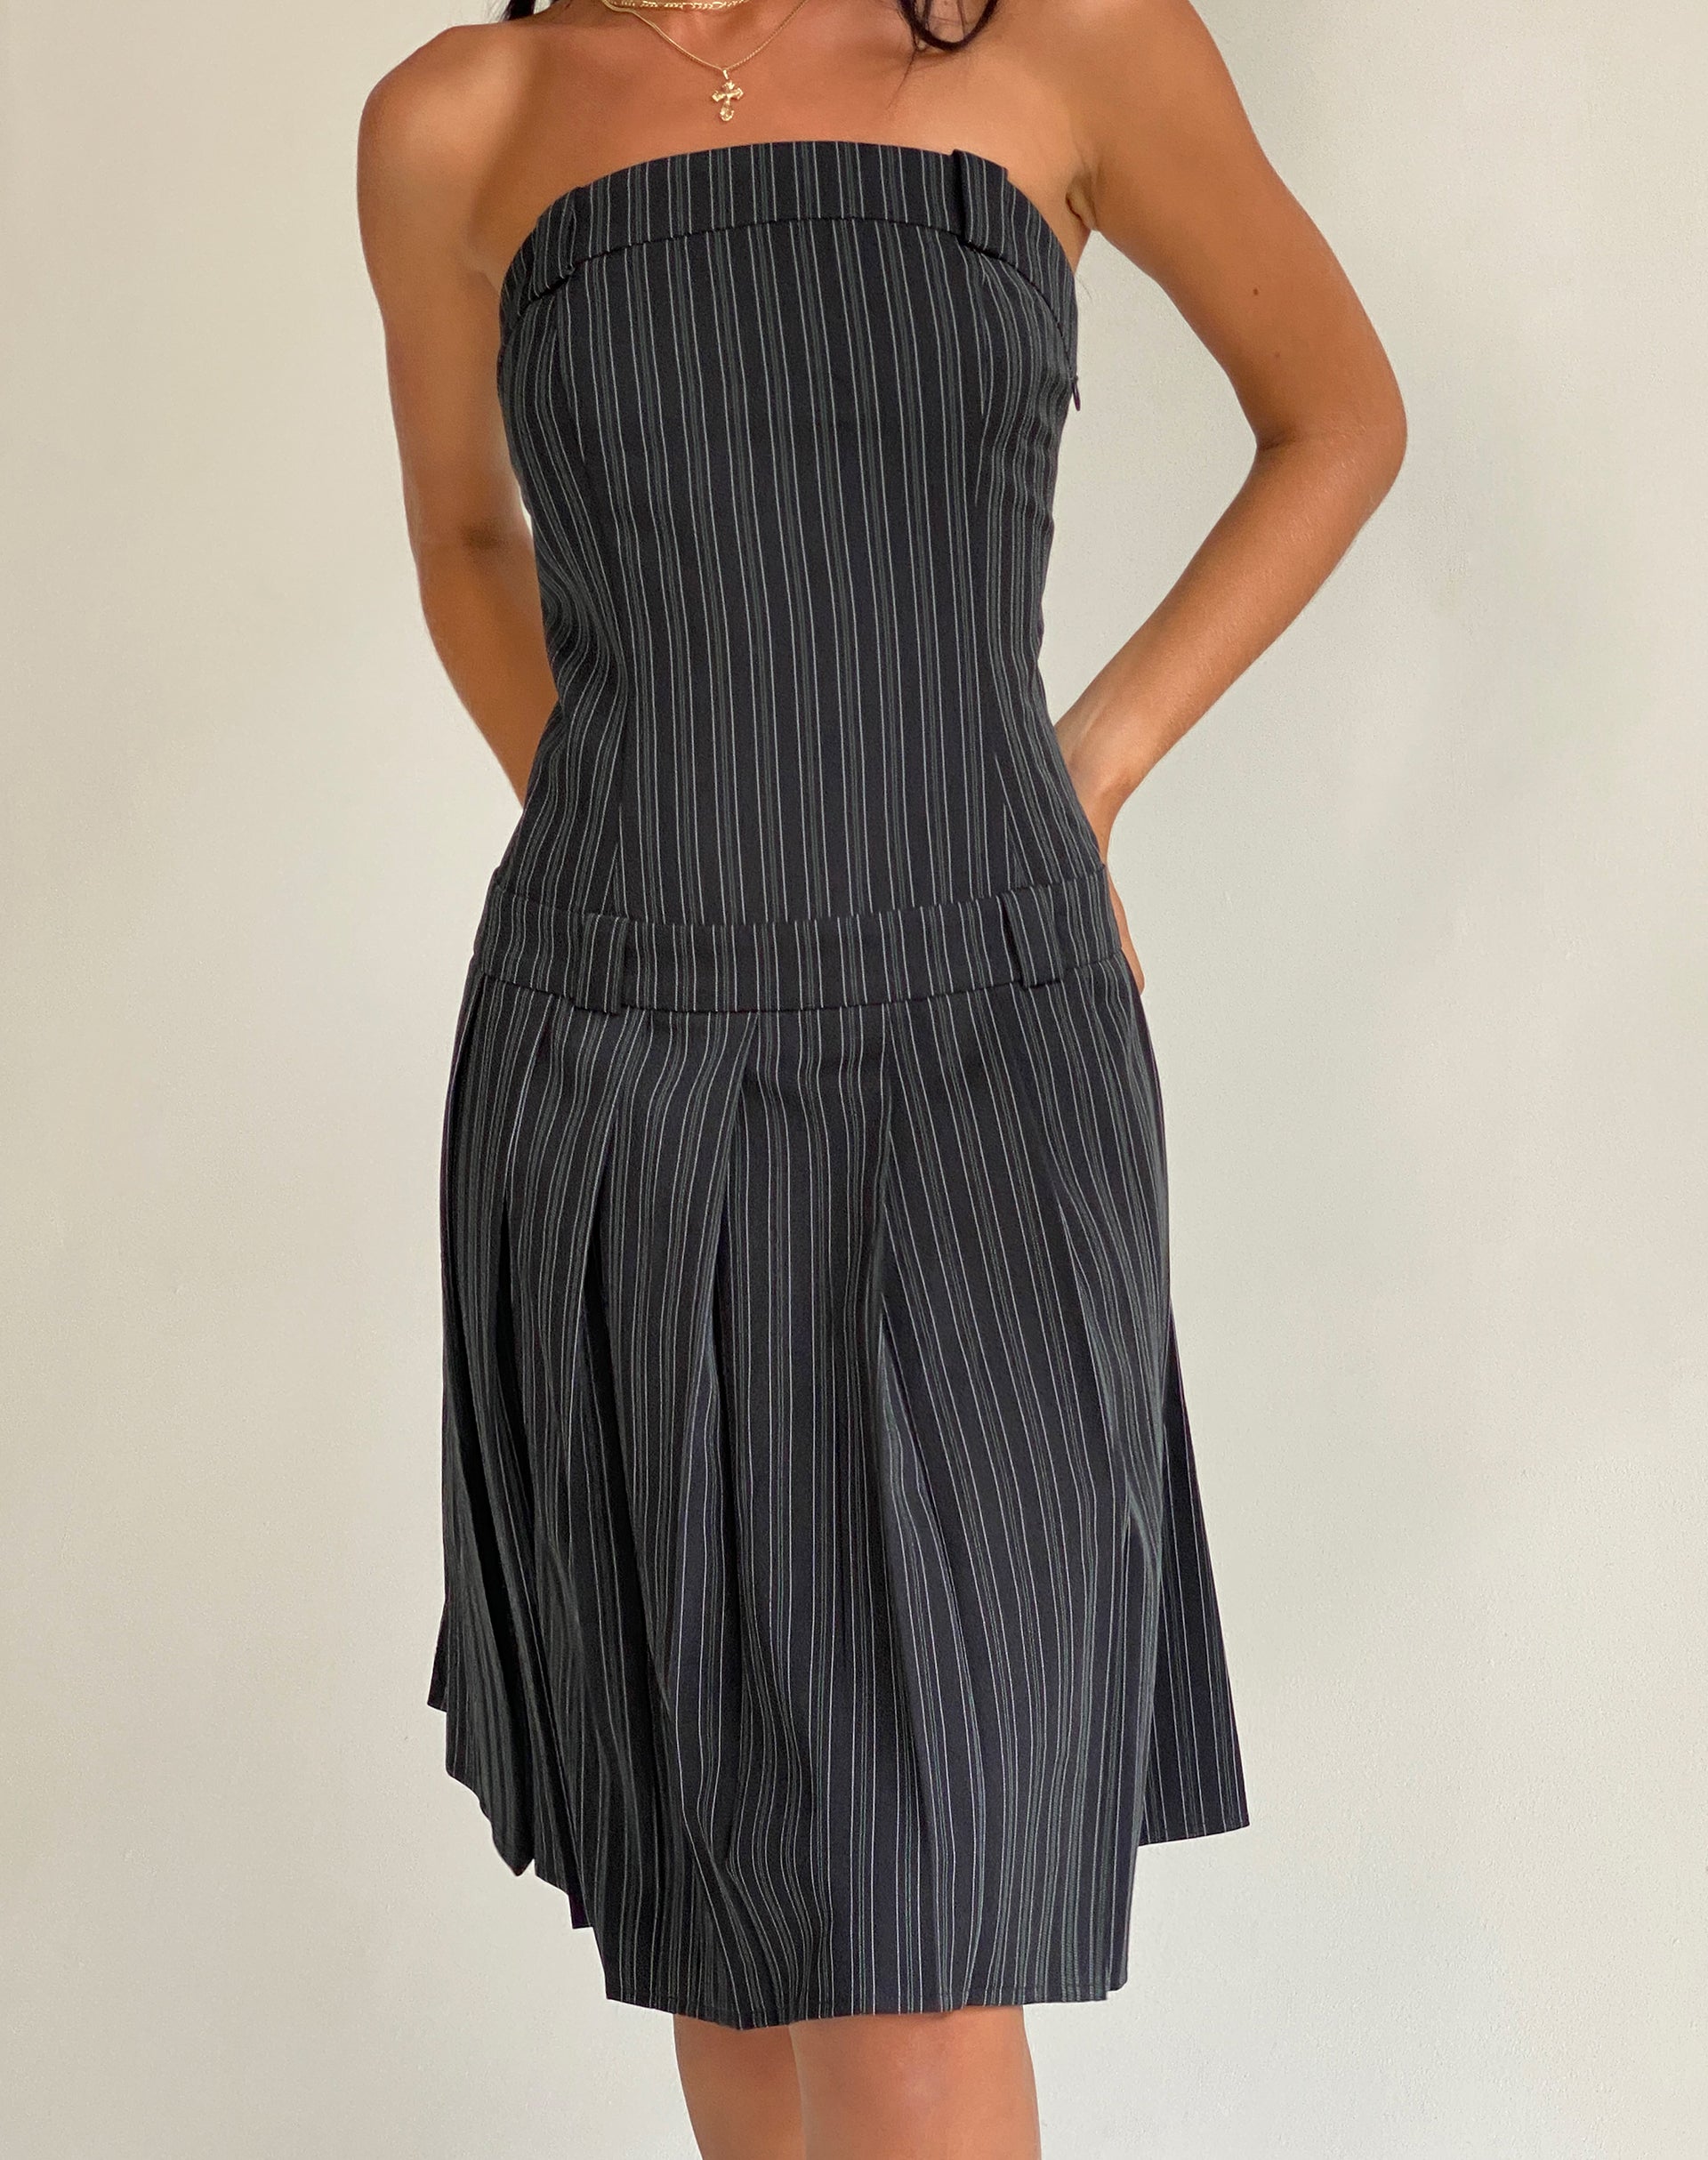 Aldari Bandeau Midi Dress in Tailoring Black Pinstripe